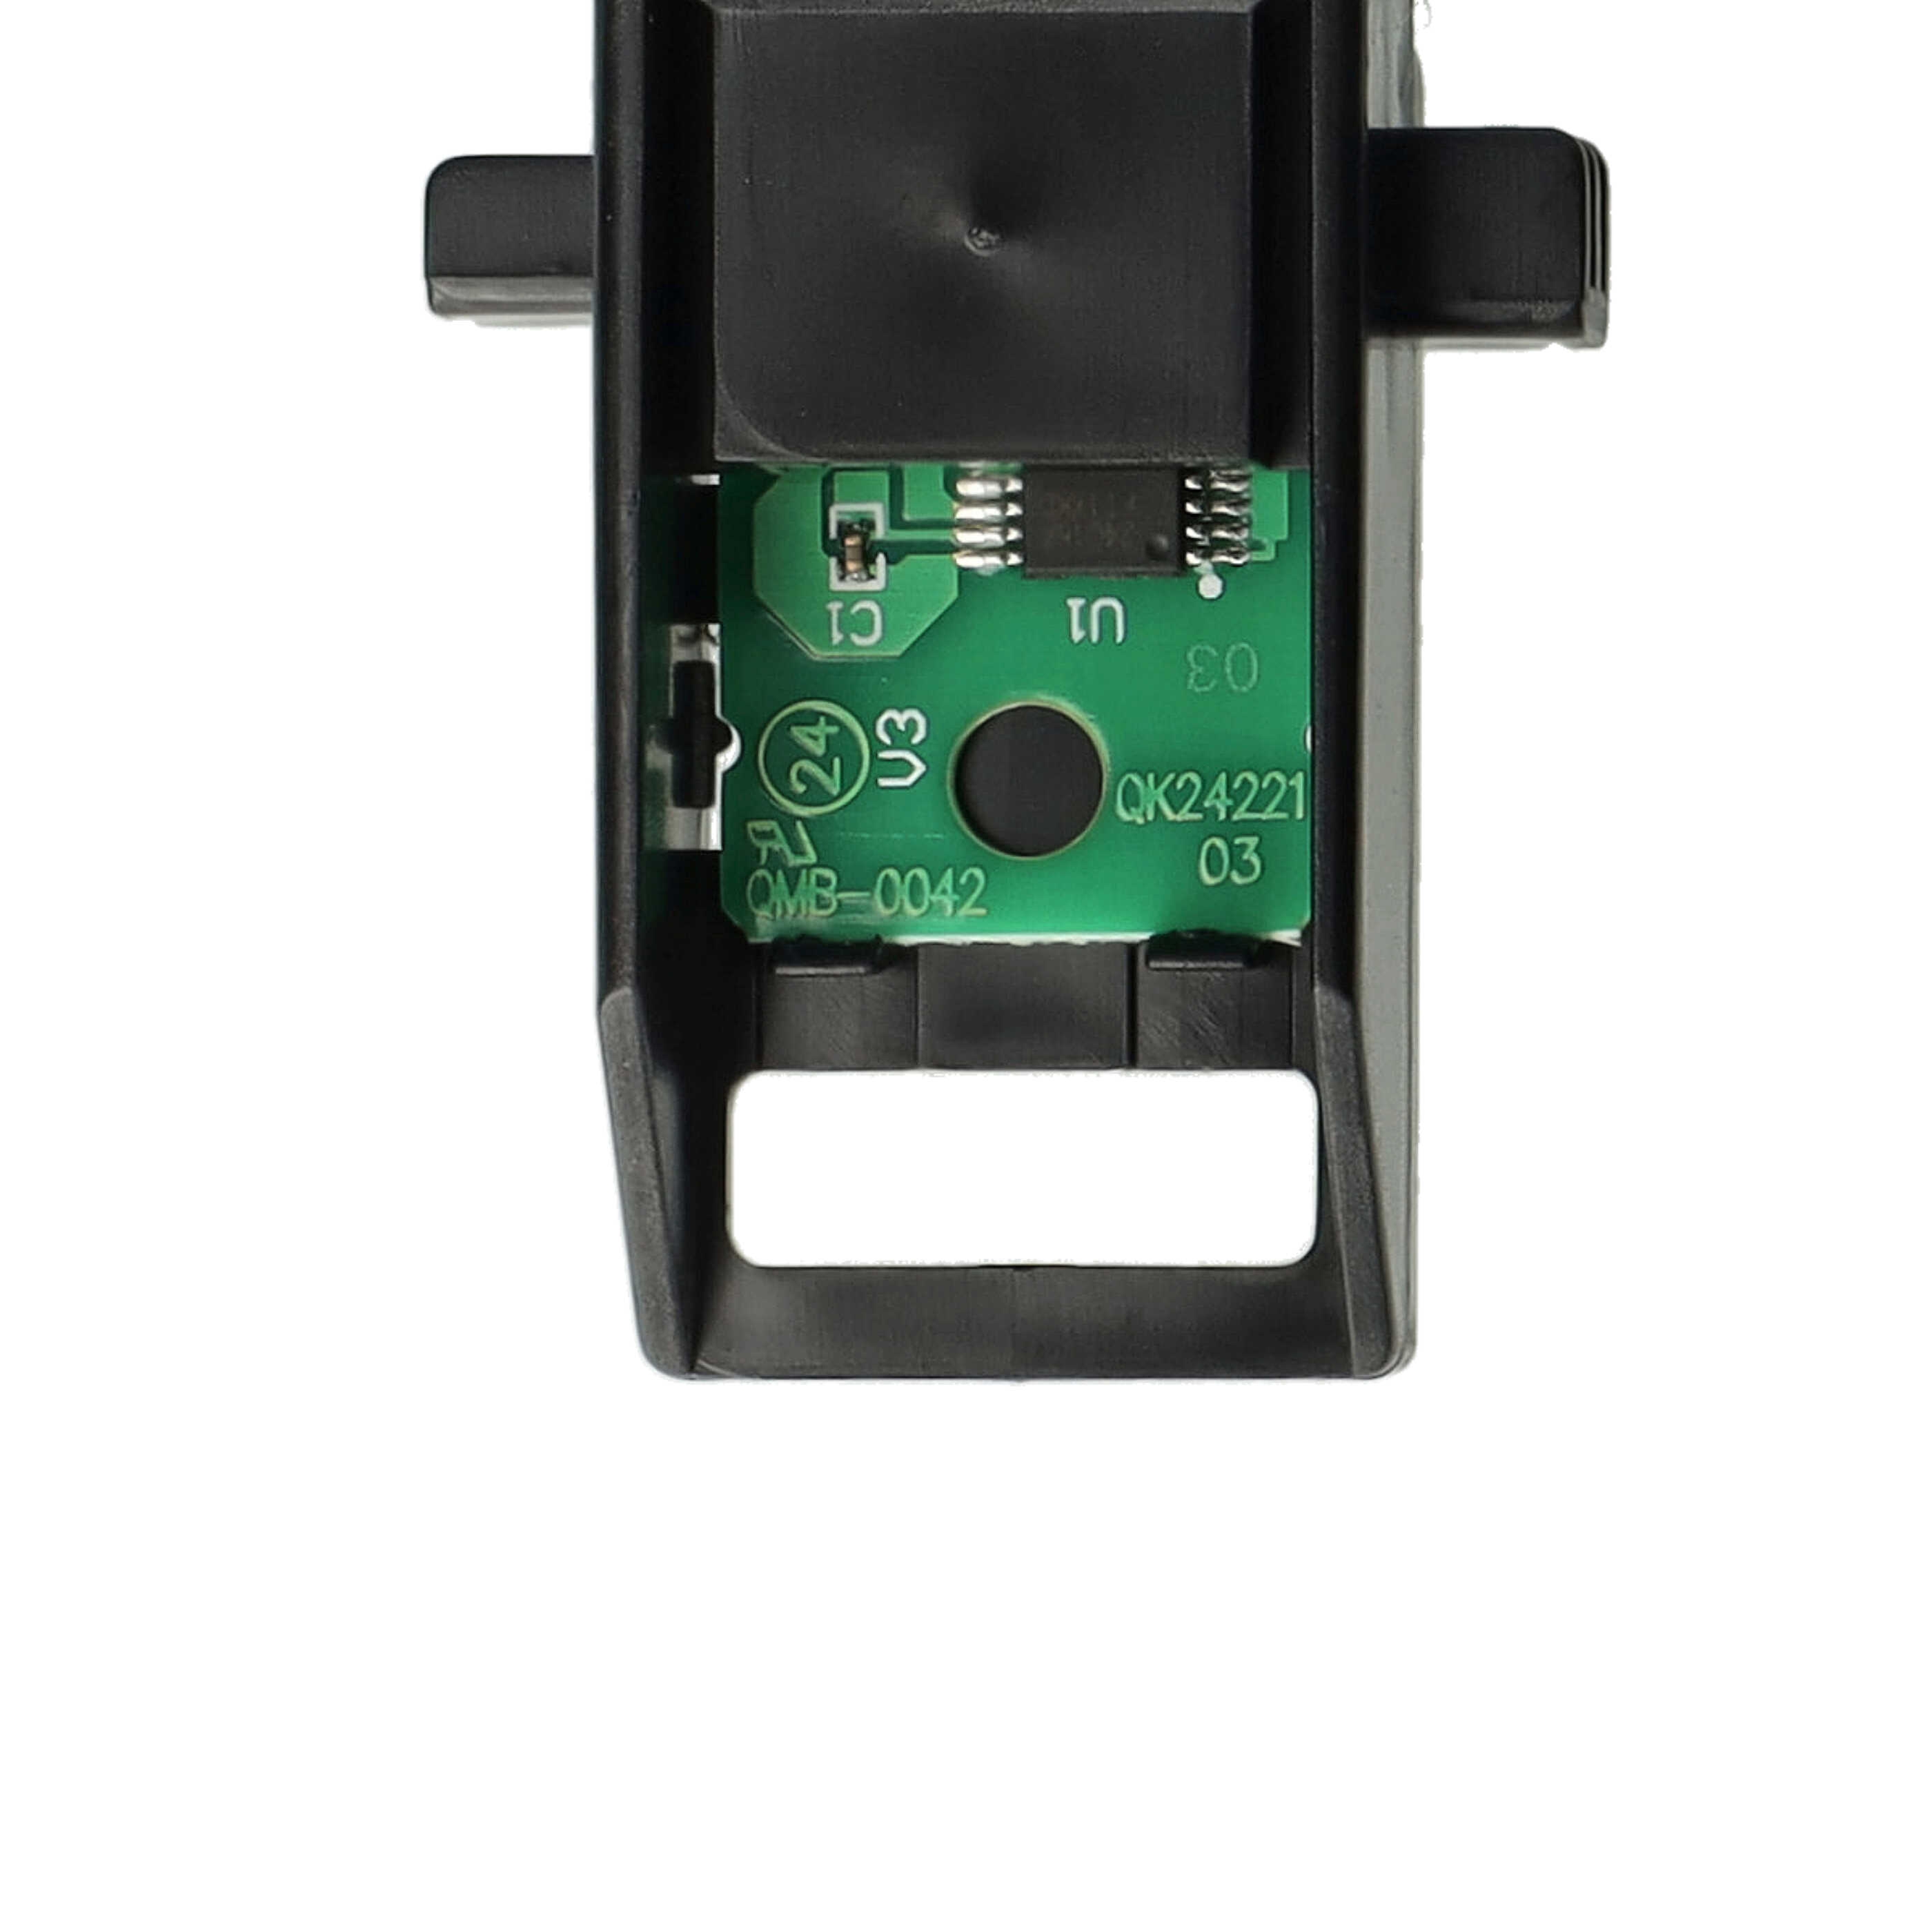 Resttintenbehälter als Ersatz für Canon MC-G03, 5794C001 für Canon Tintenstrahldrucker - schwarz